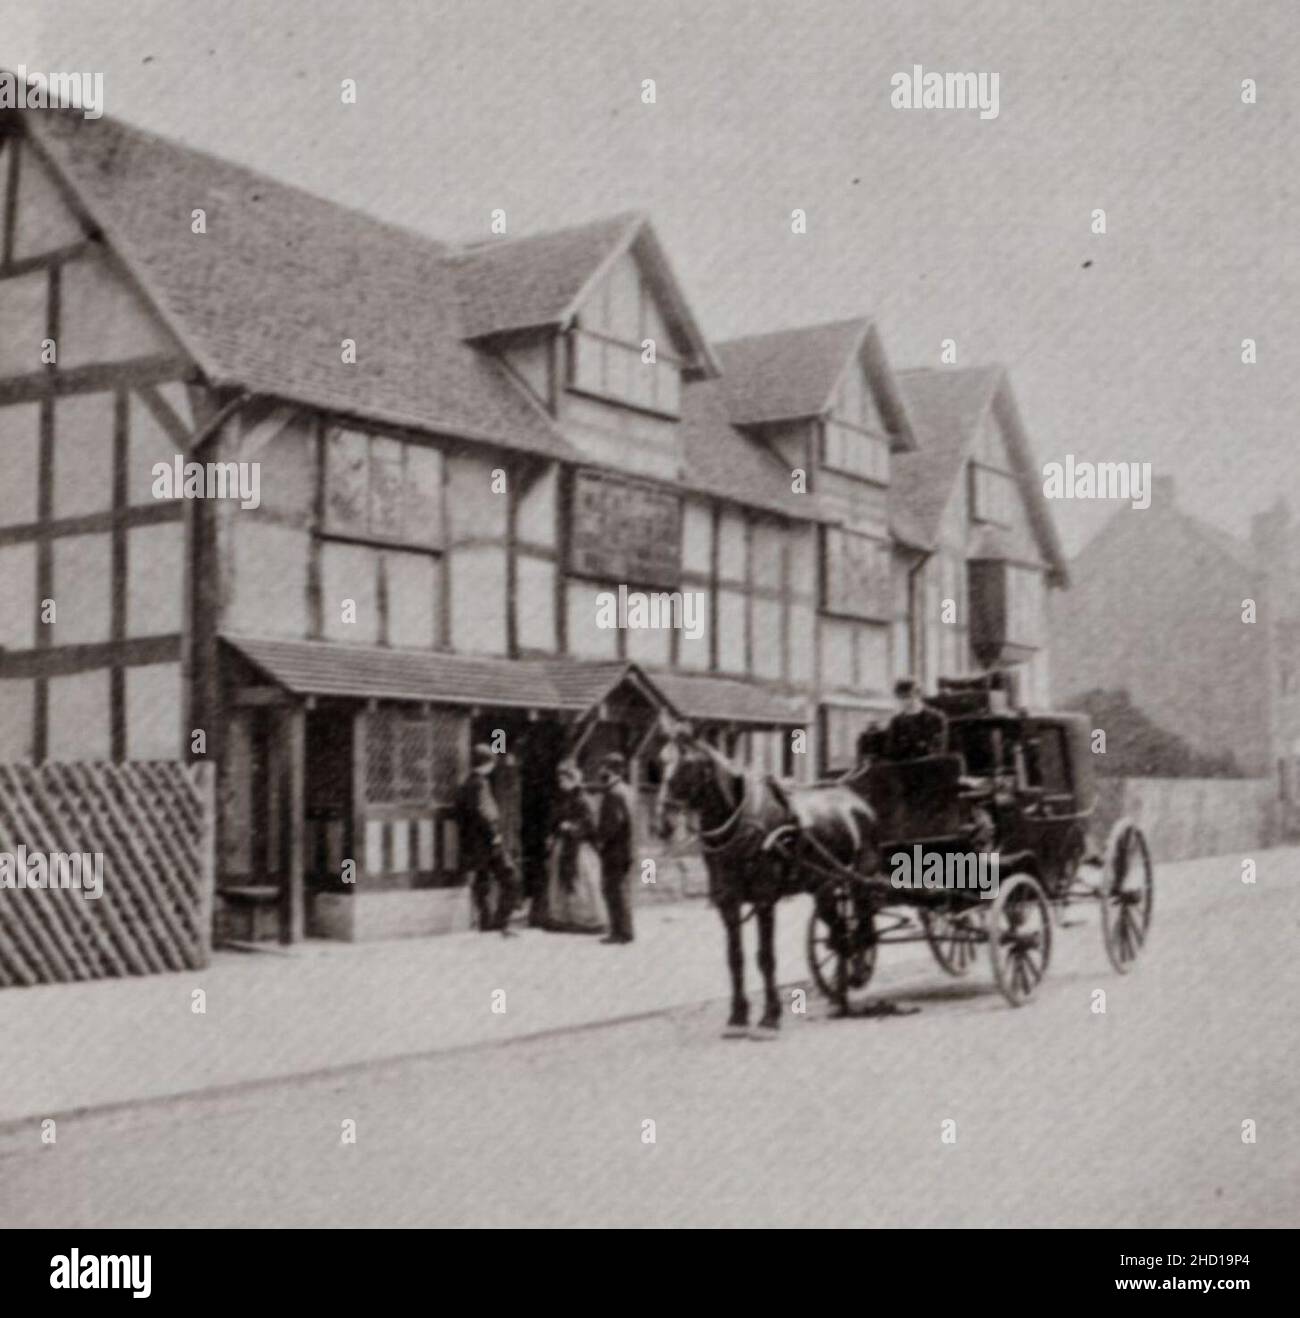 Robinson, Henry Peach - ein Haus aus dem 16. JH. In Stratford-upon-Avon (Shakespeares Geburtsort) Stockfoto